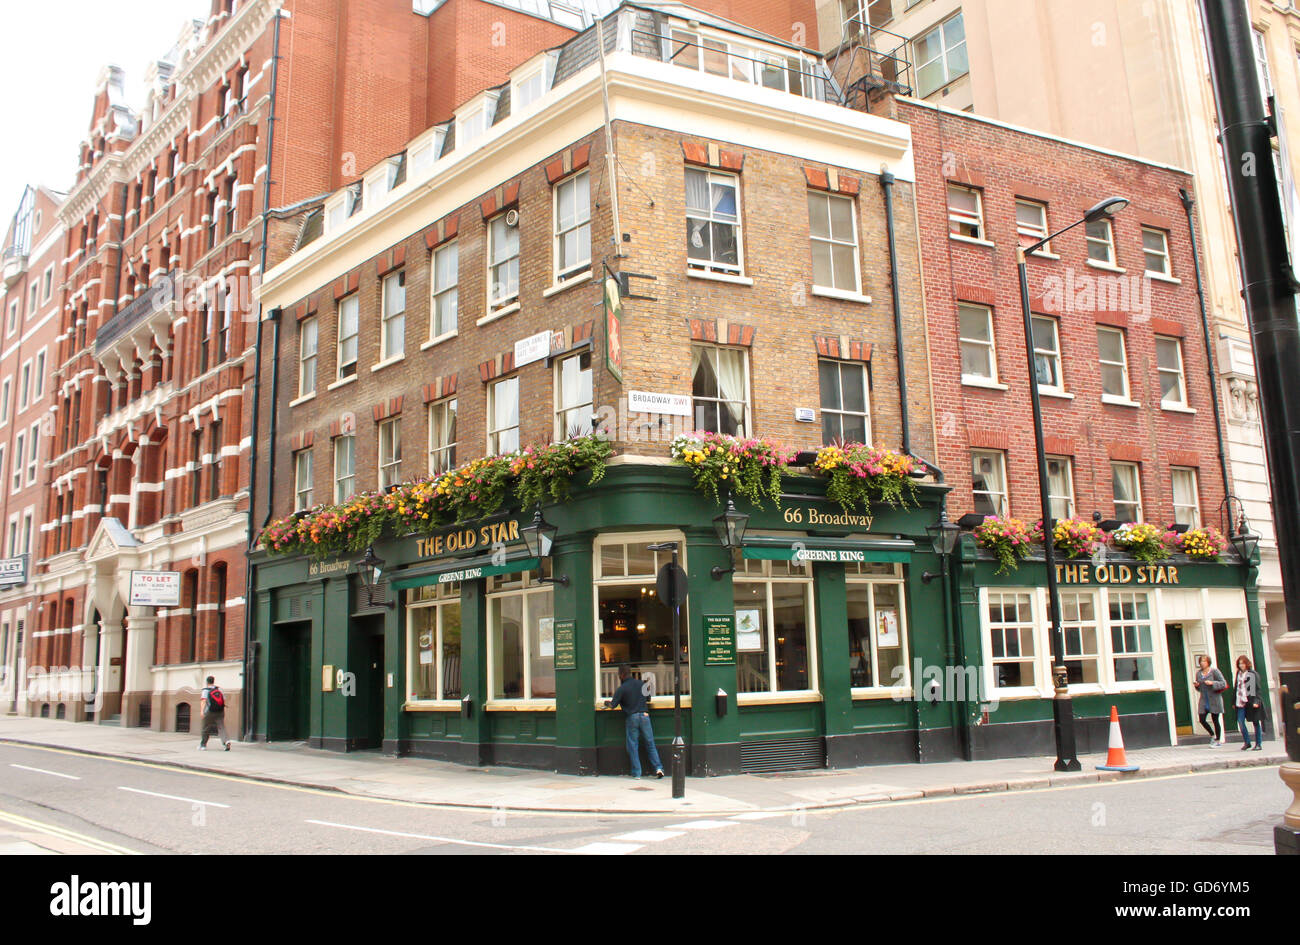 LONDON, UK - 16. August 2010: außen Tageslicht Blick auf "The Old Star" Taverne in London mit unbekannten Menschen. Stockfoto